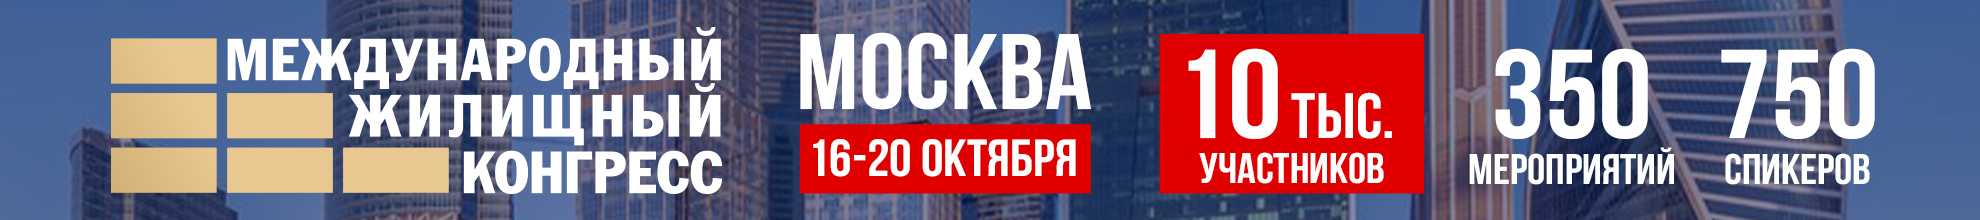 Международный Жилищный конгресс в Москве 16 - 20 октября 2023